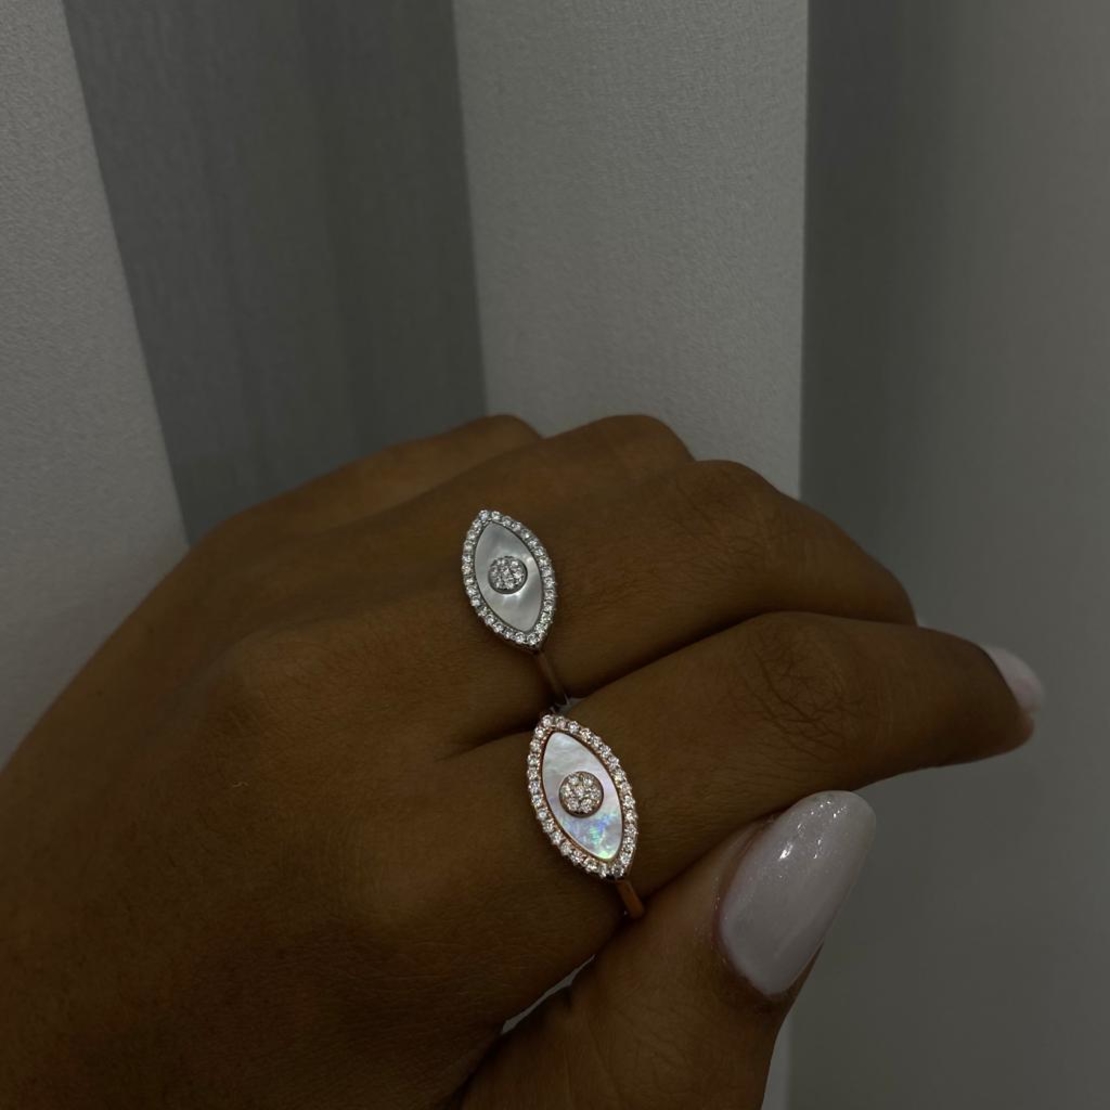 טבעת כסף 925 - עין פנינה